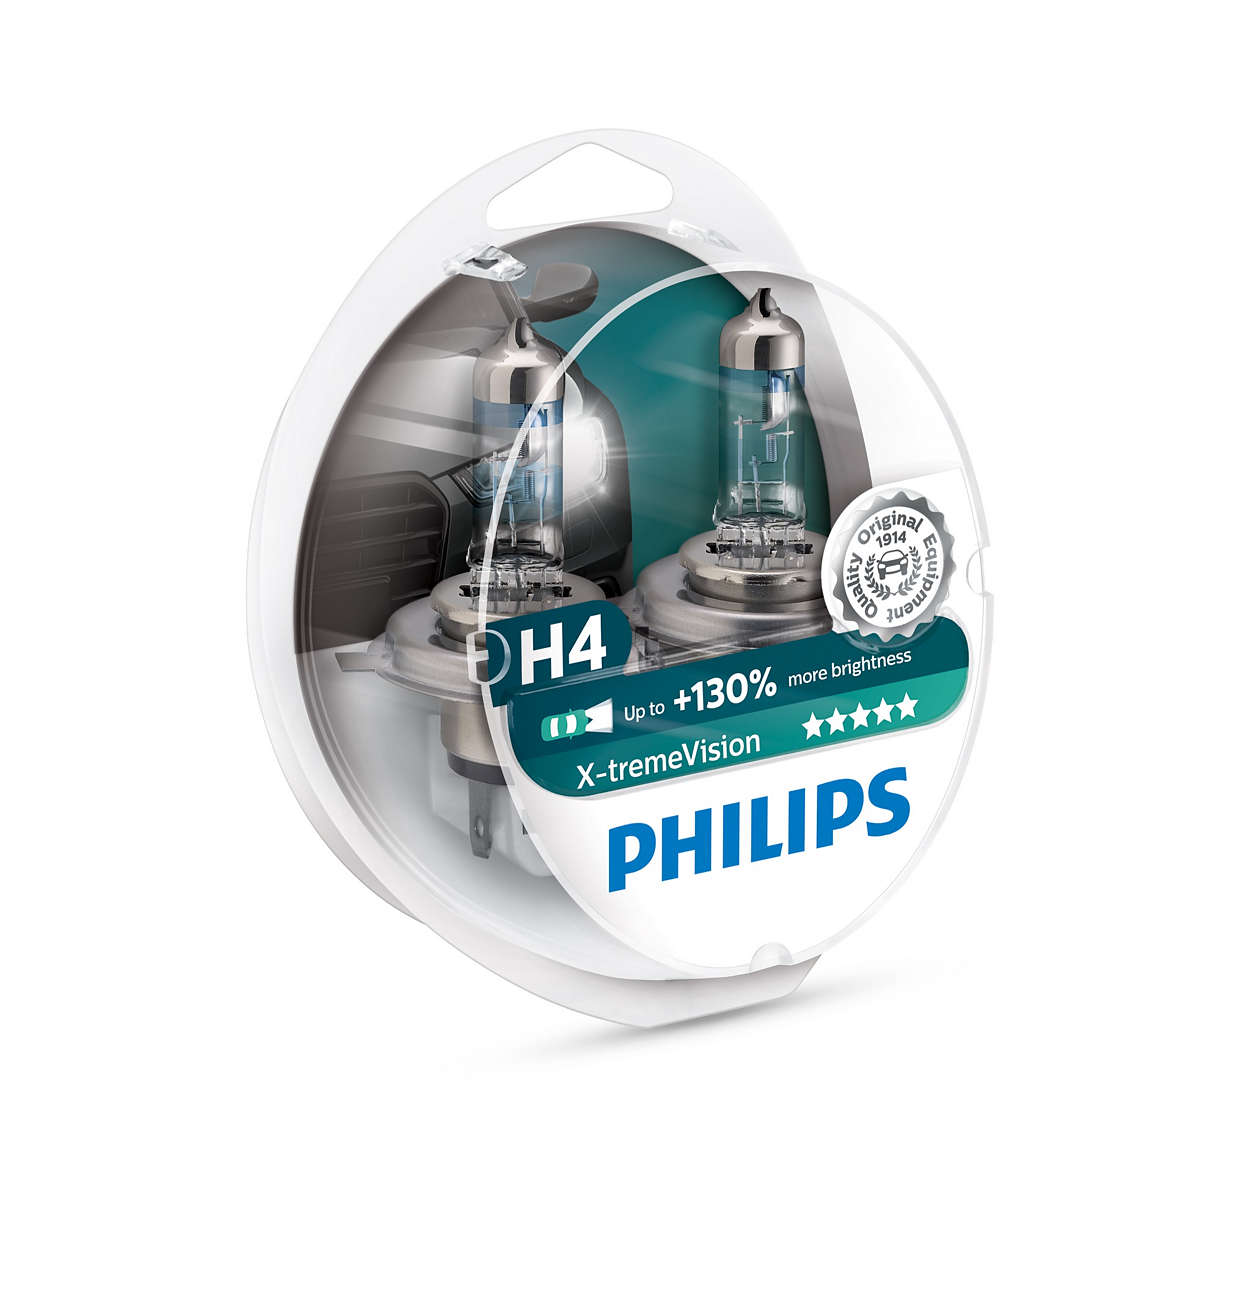 Philips H4 X-treme Vision 60/55 Watt 12V Frontlampe Scheinwerfer 100% Licht 